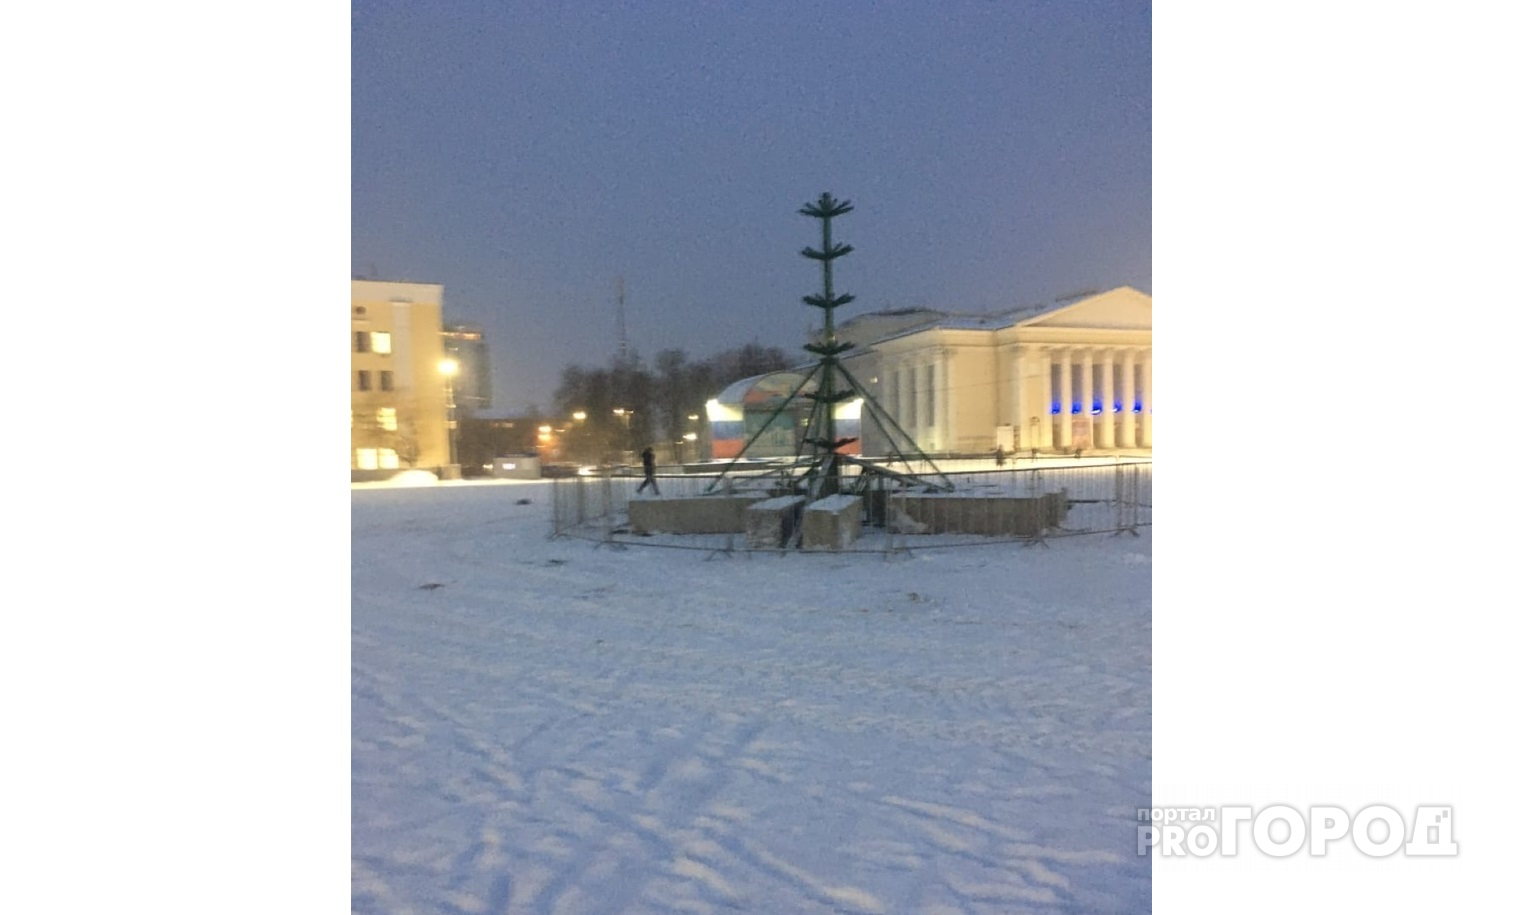 Фото: в Кирове началась установка елки на Театральной площади